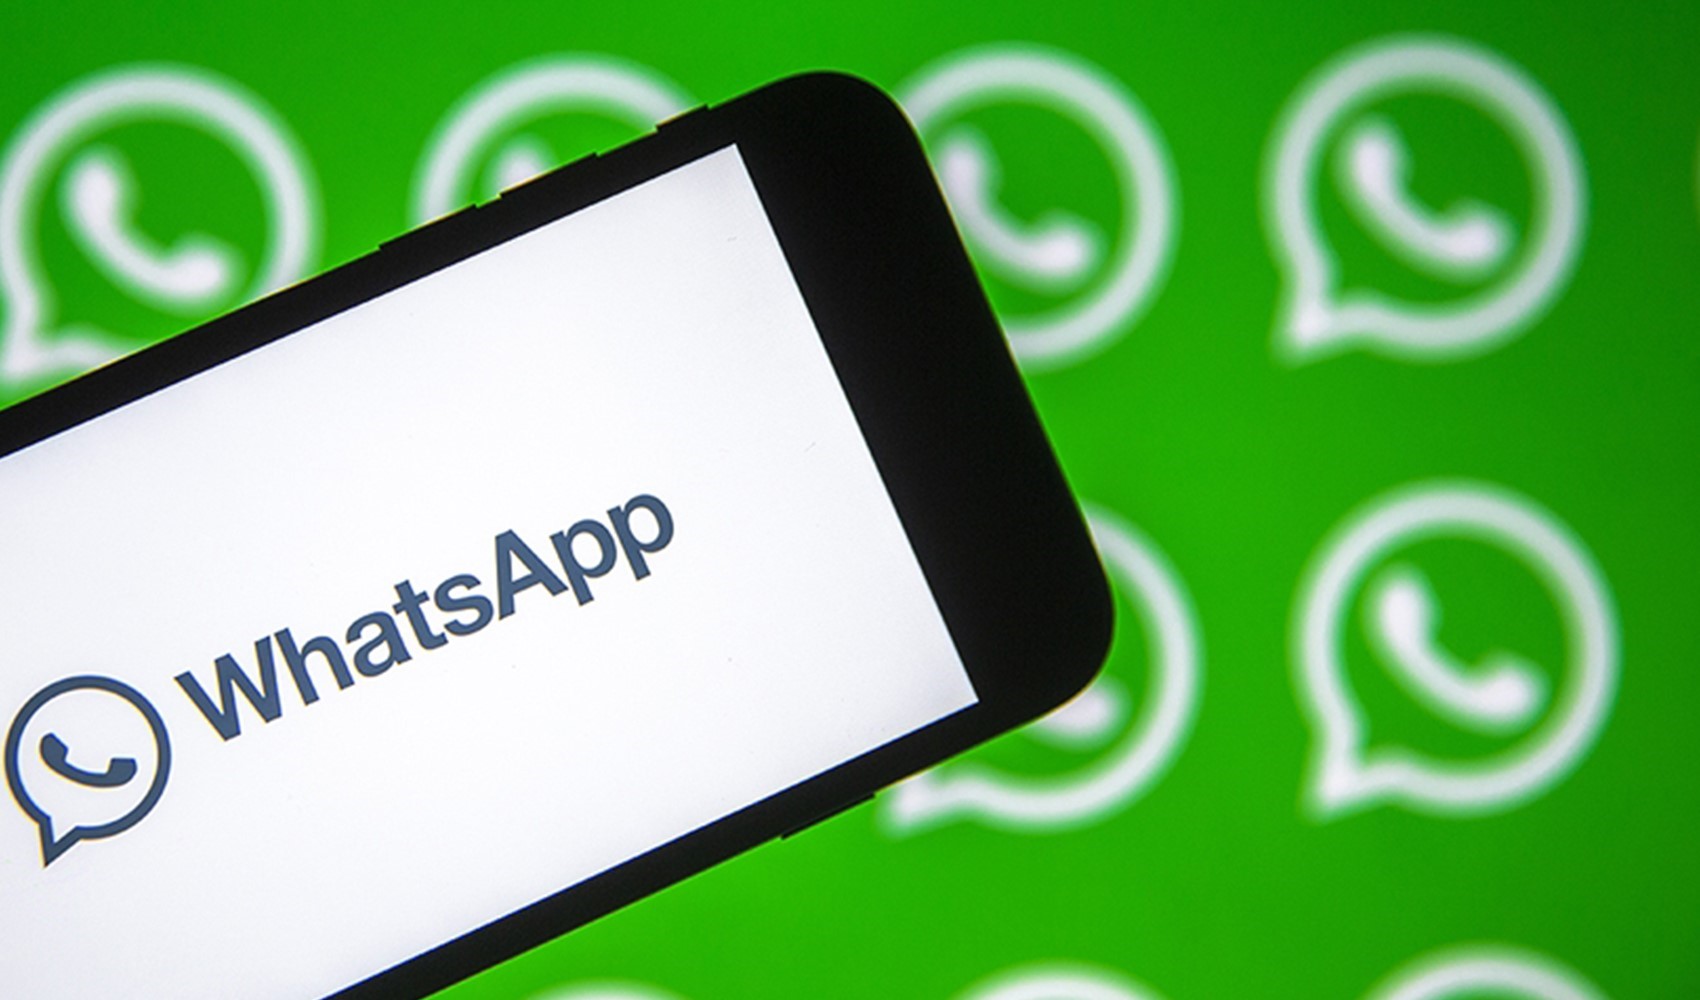 WhatsApp durum paylaşımlarına etiketleme özelliği geliyor!